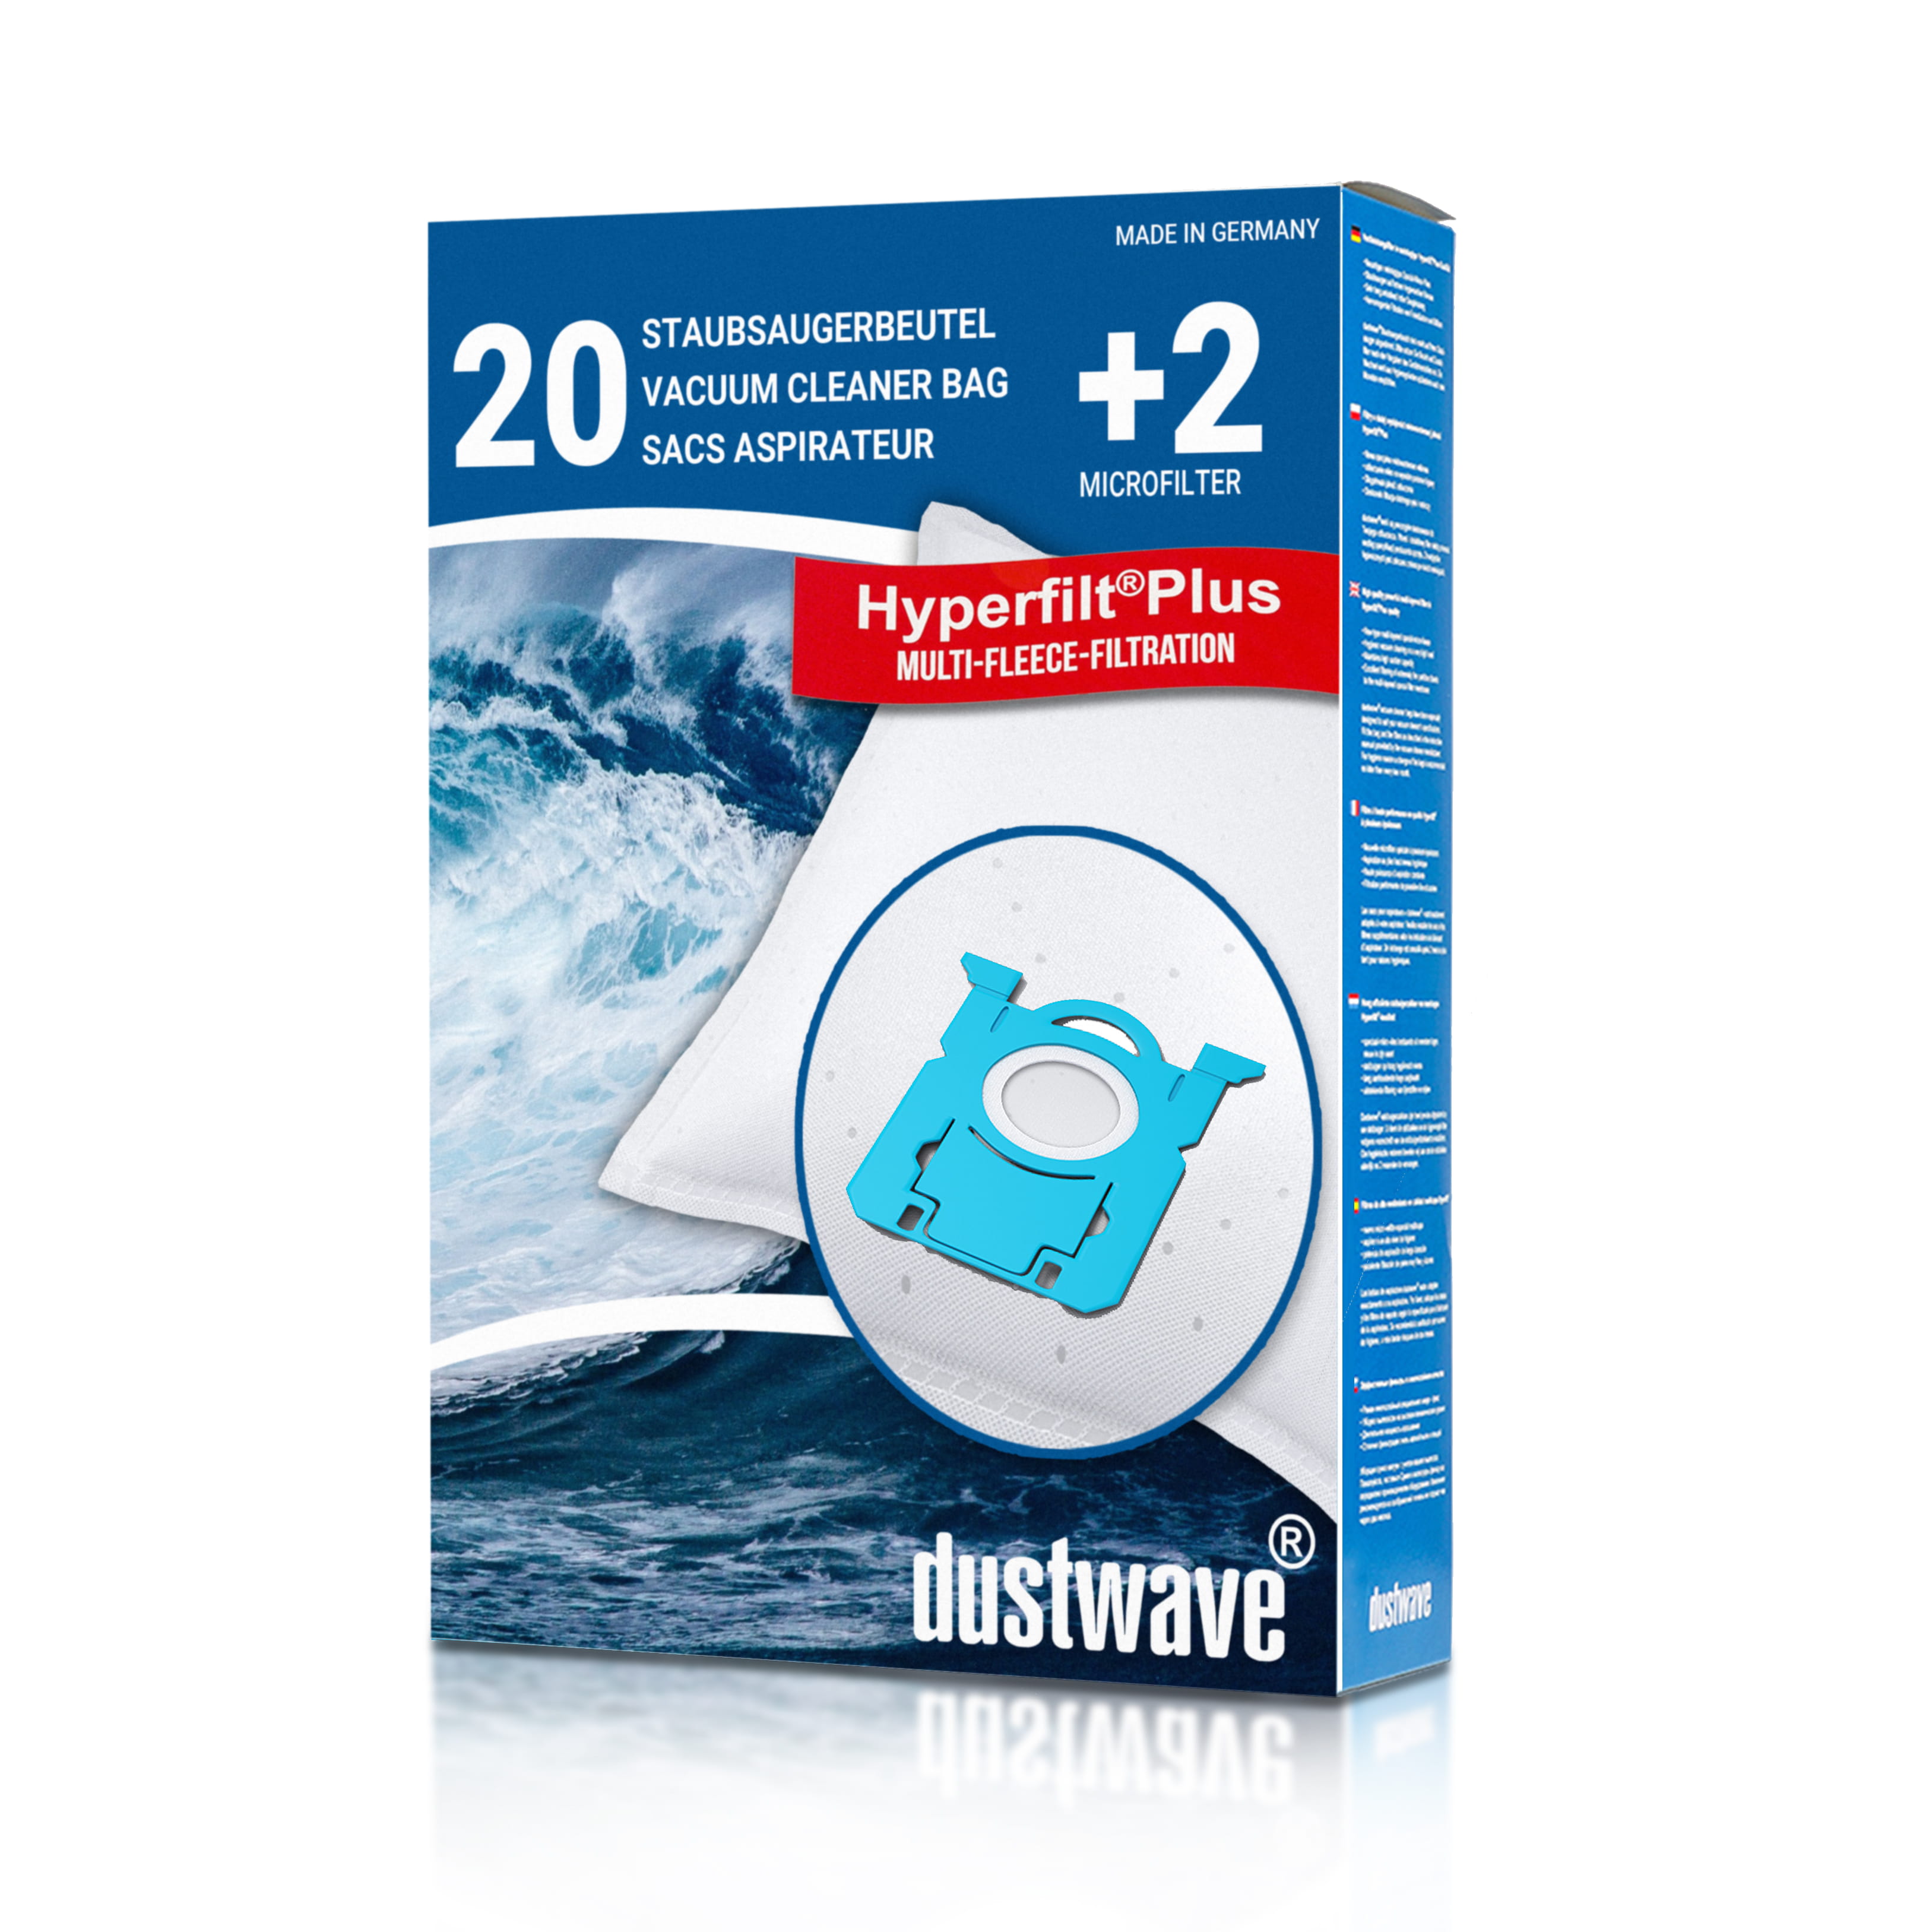 Dustwave® 20 Staubsaugerbeutel für AEG AEO 5475 Essensio - hocheffizient mit Hygieneverschluss - Made in Germany